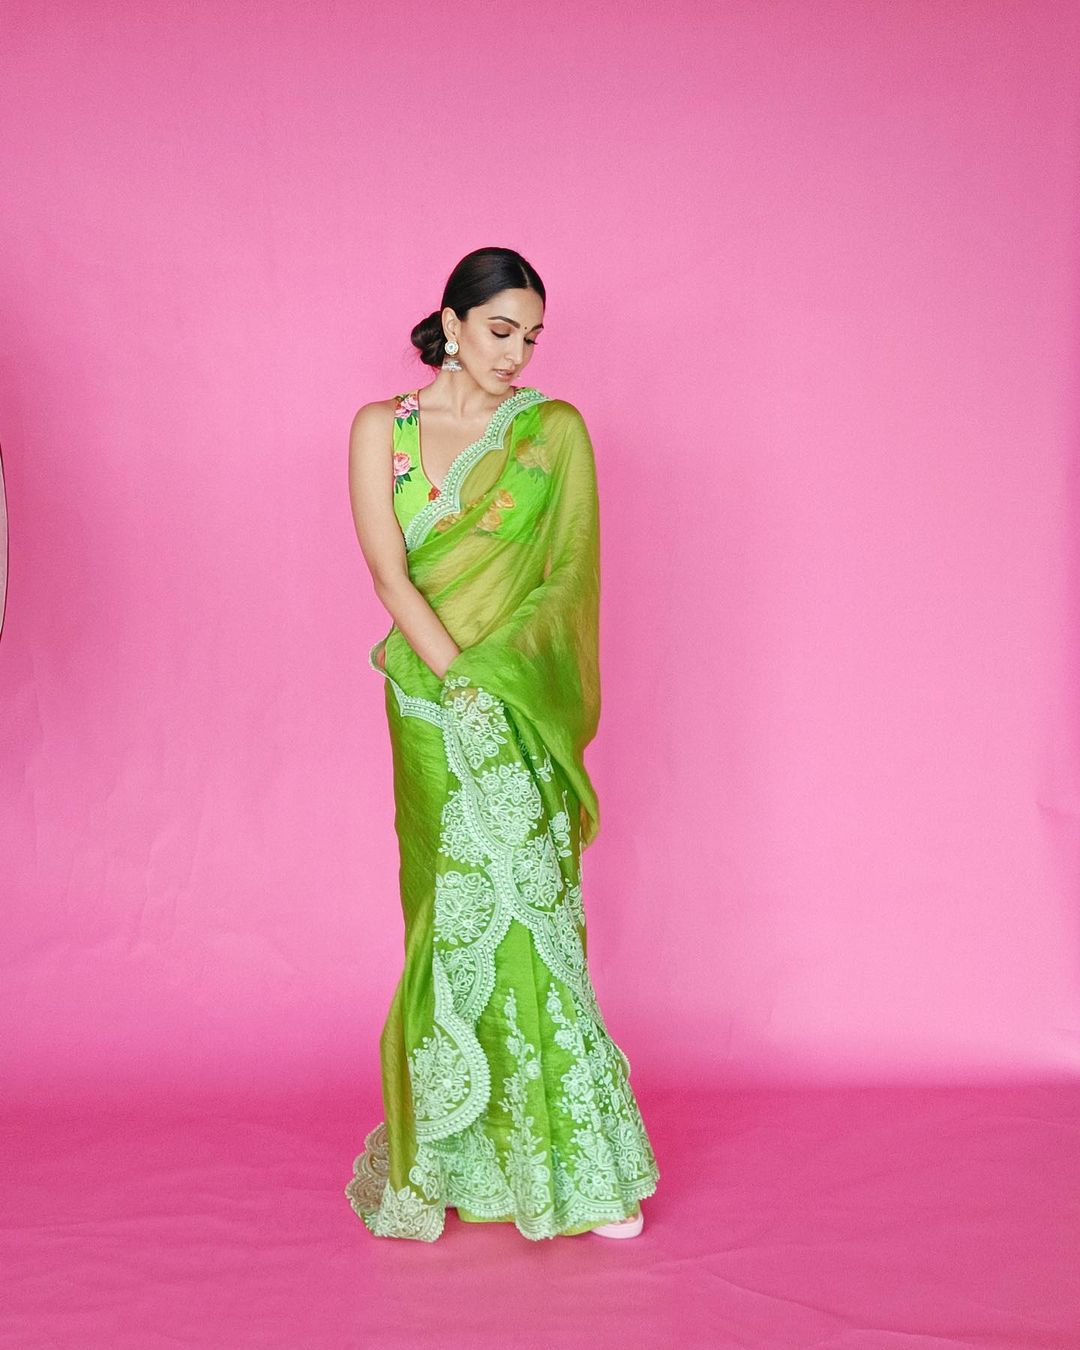 Kiara Advani looks beautiful in the embroidered green saree.